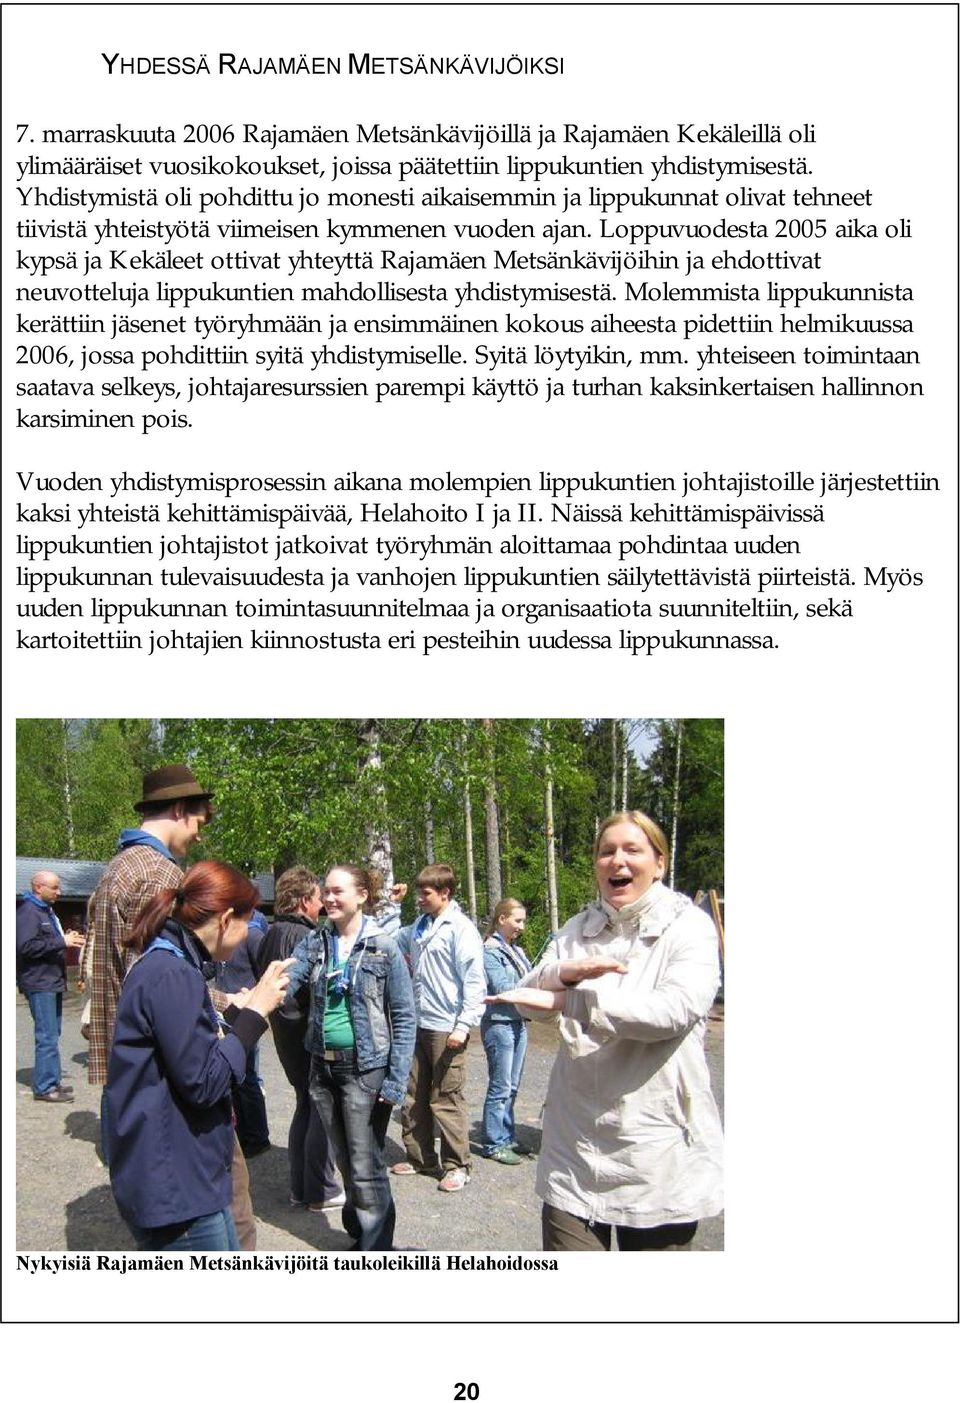 Loppuvuodesta 2005 aika oli kypsä ja Kekäleet ottivat yhteyttä Rajamäen Metsänkävijöihin ja ehdottivat neuvotteluja lippukuntien mahdollisesta yhdistymisestä.